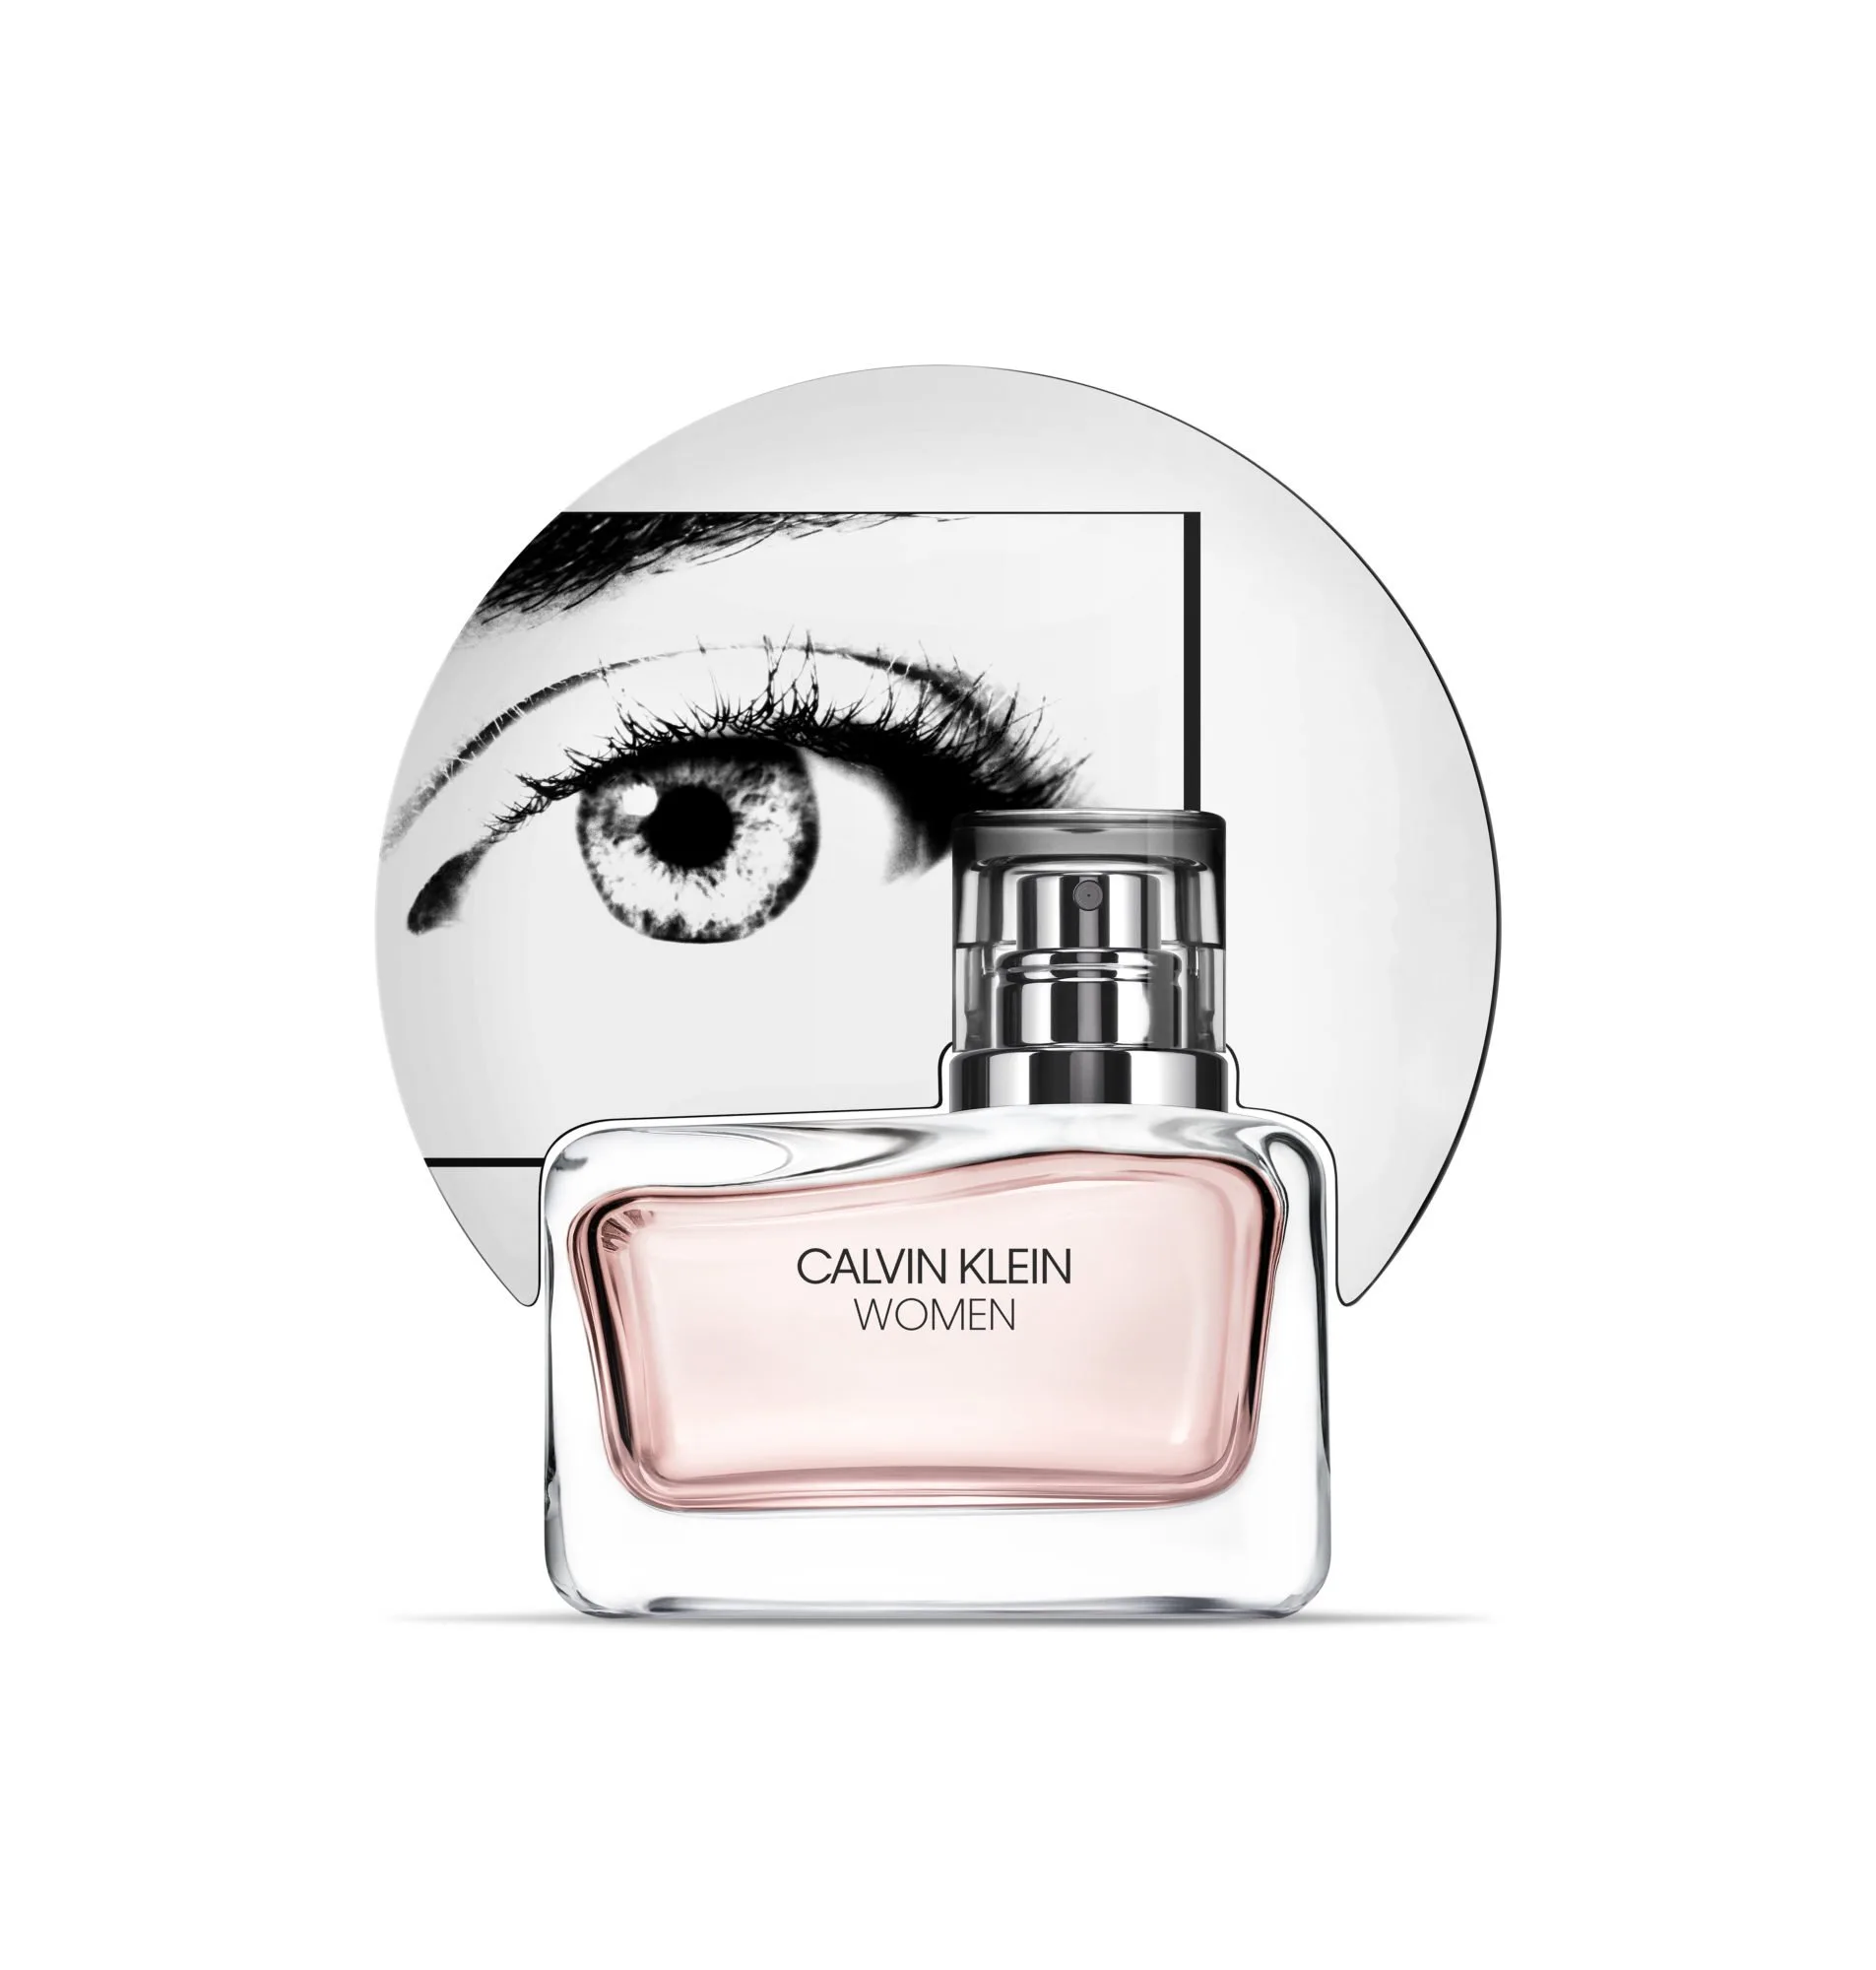 Fragrance of the Month: Calvin Klein Women Eau De Parfum